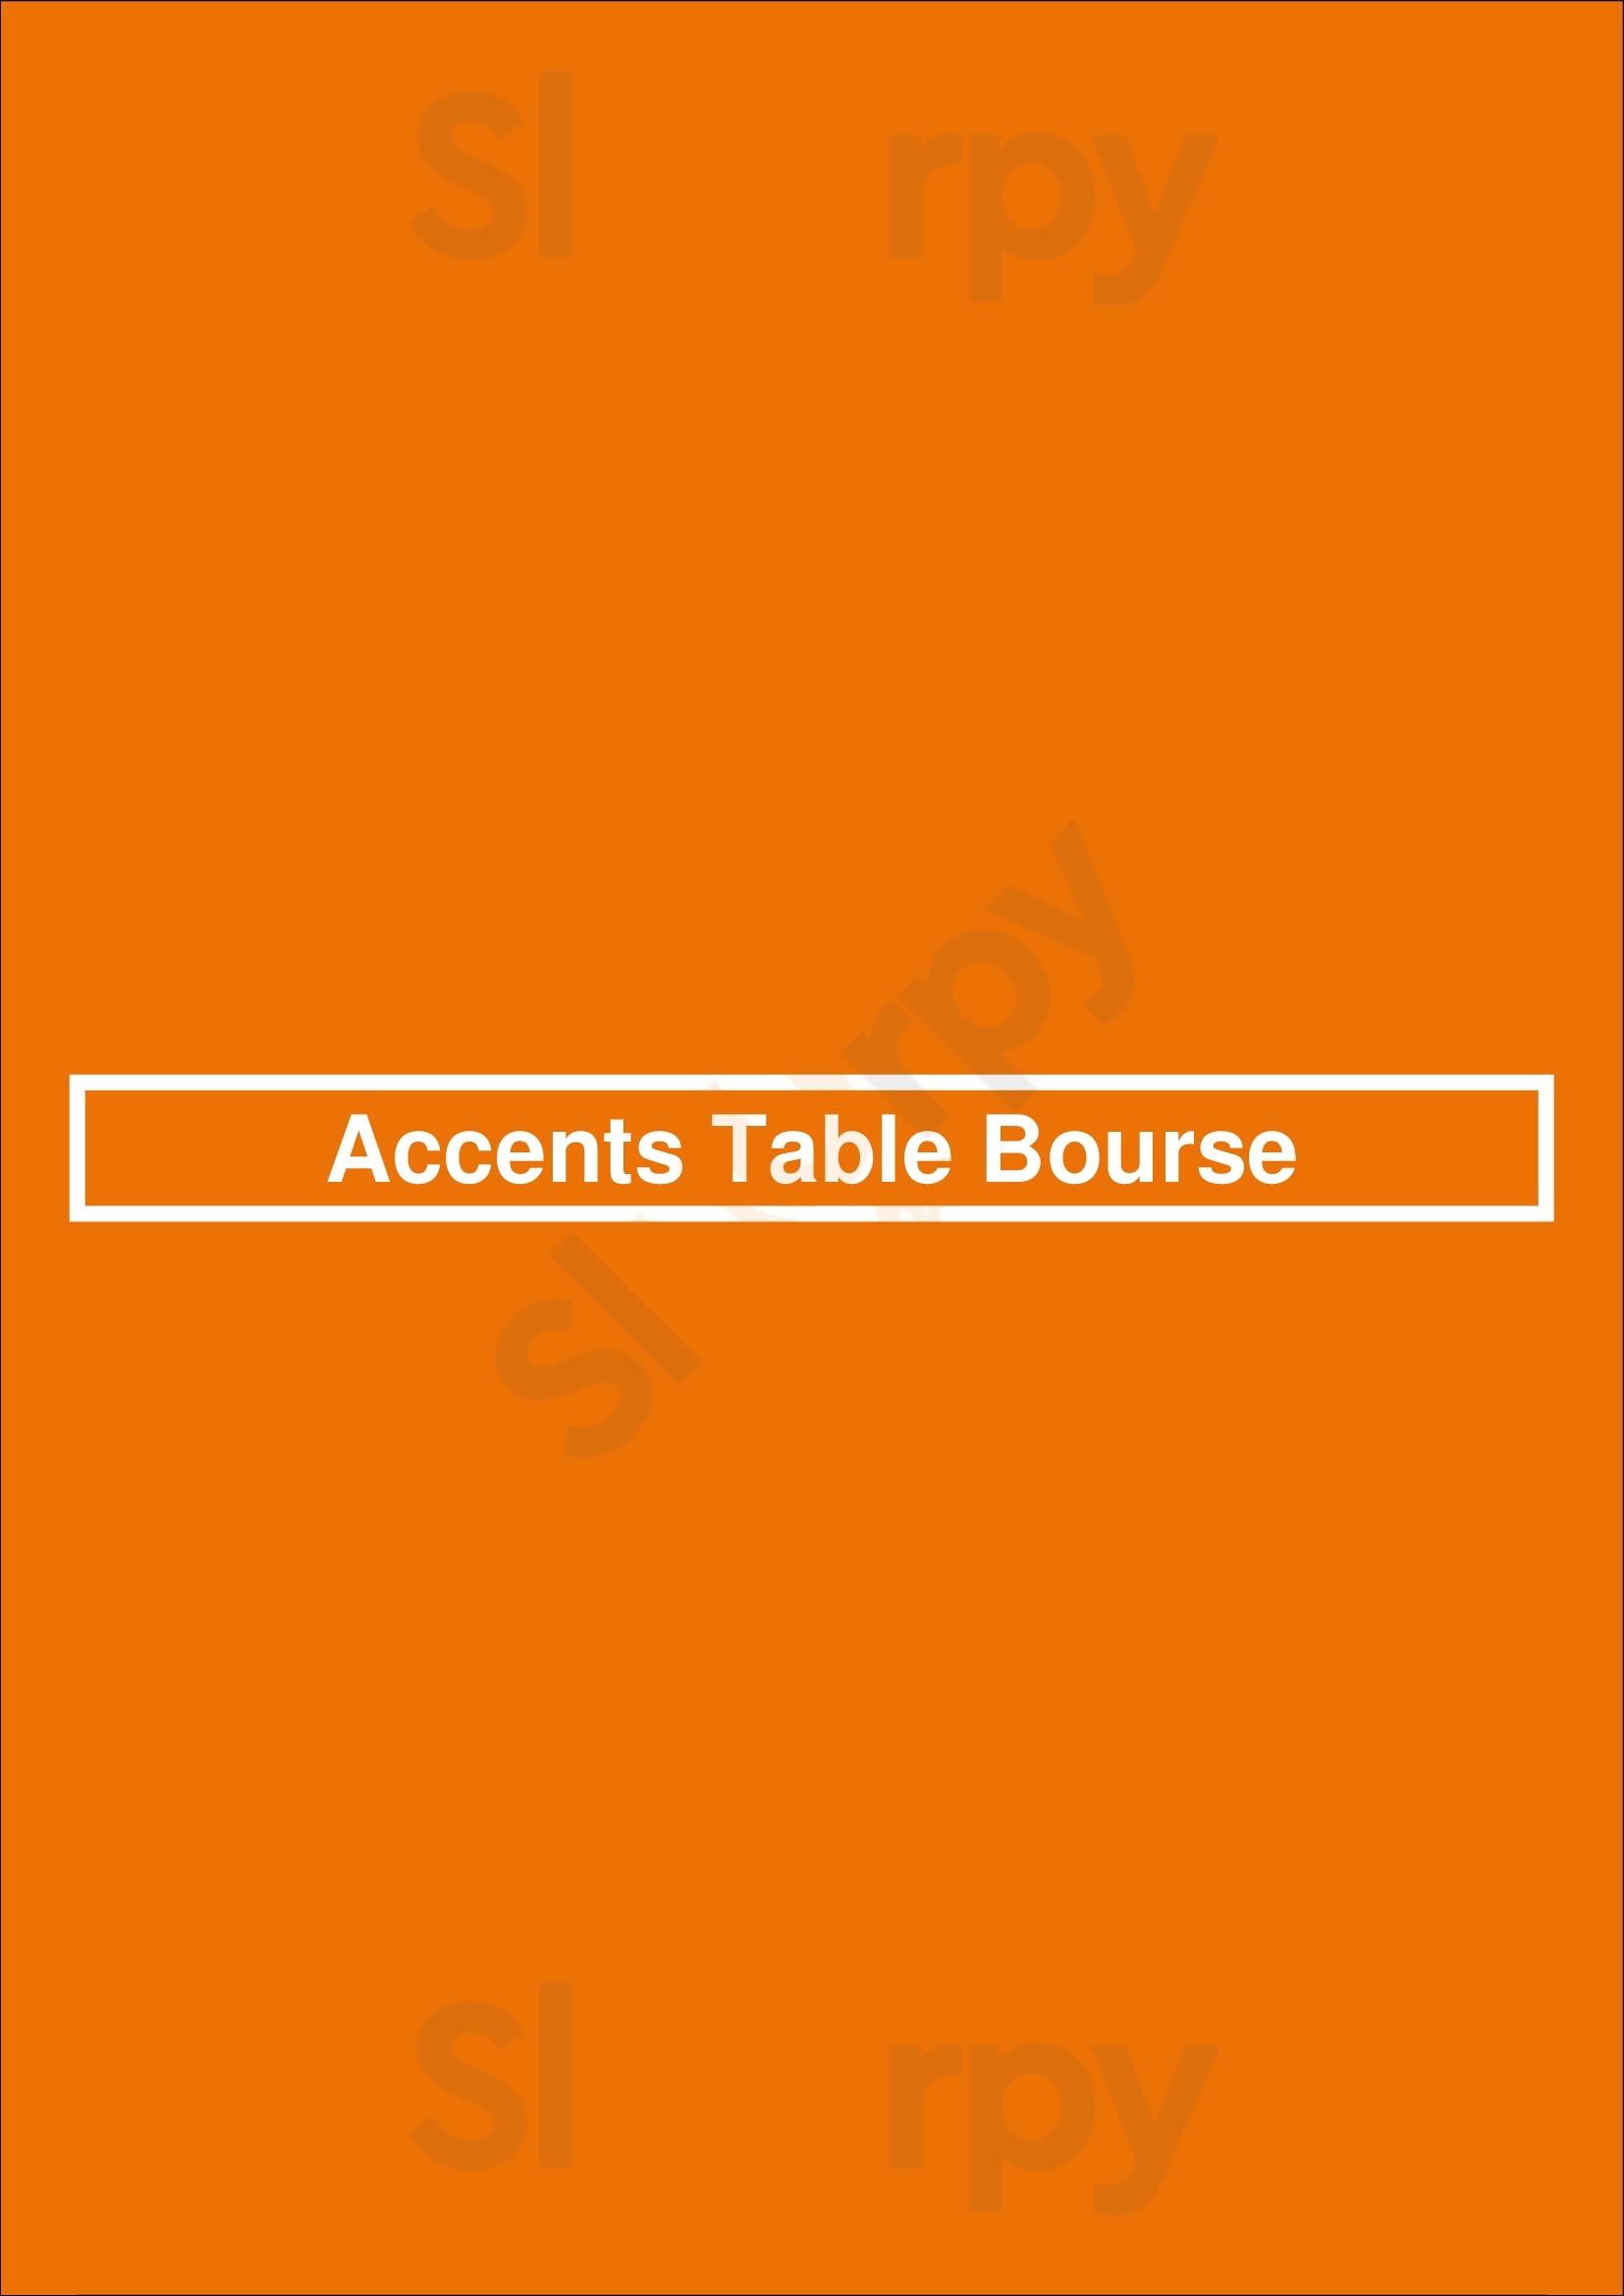 Accents Table Bourse Paris Menu - 1